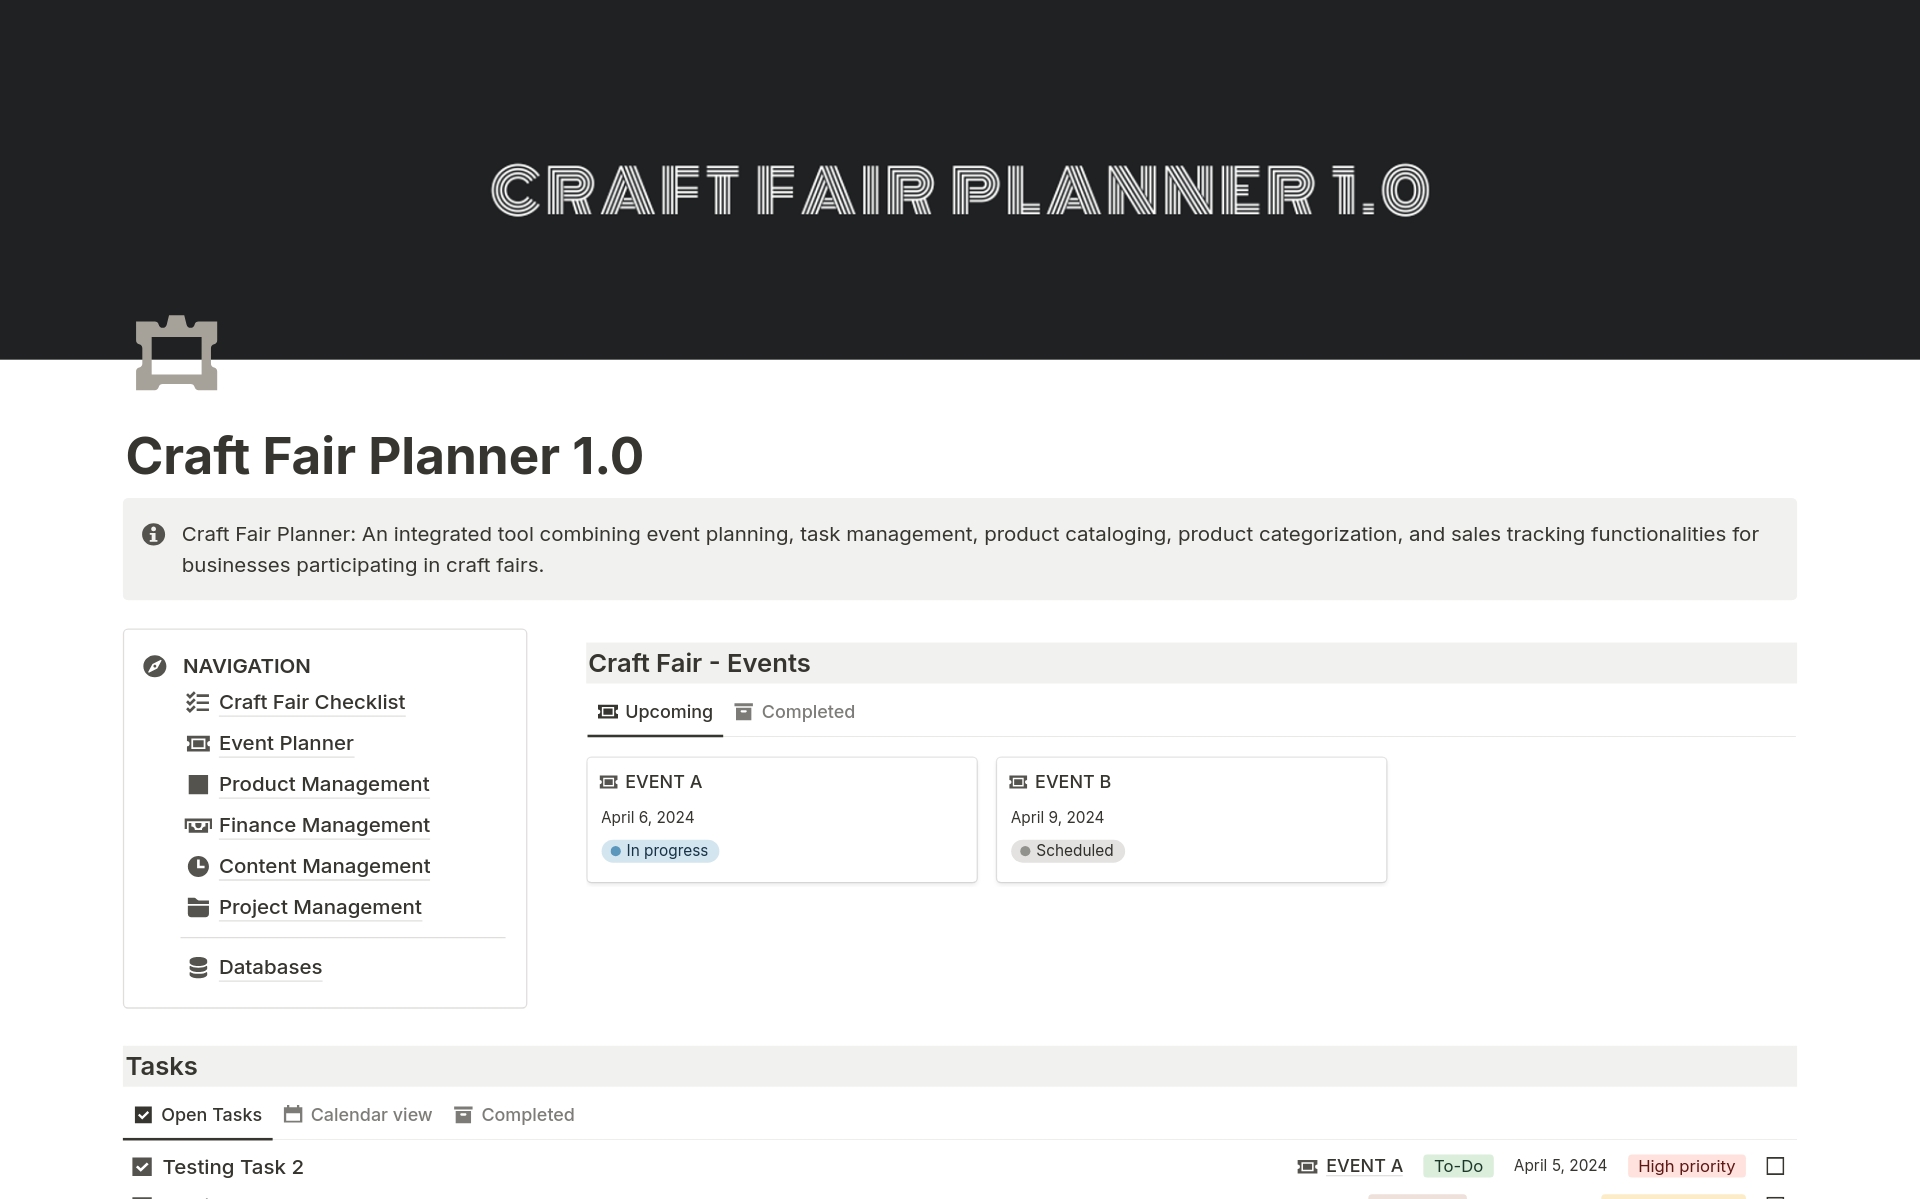 Uma prévia do modelo para Craft Fair Planner 1.0